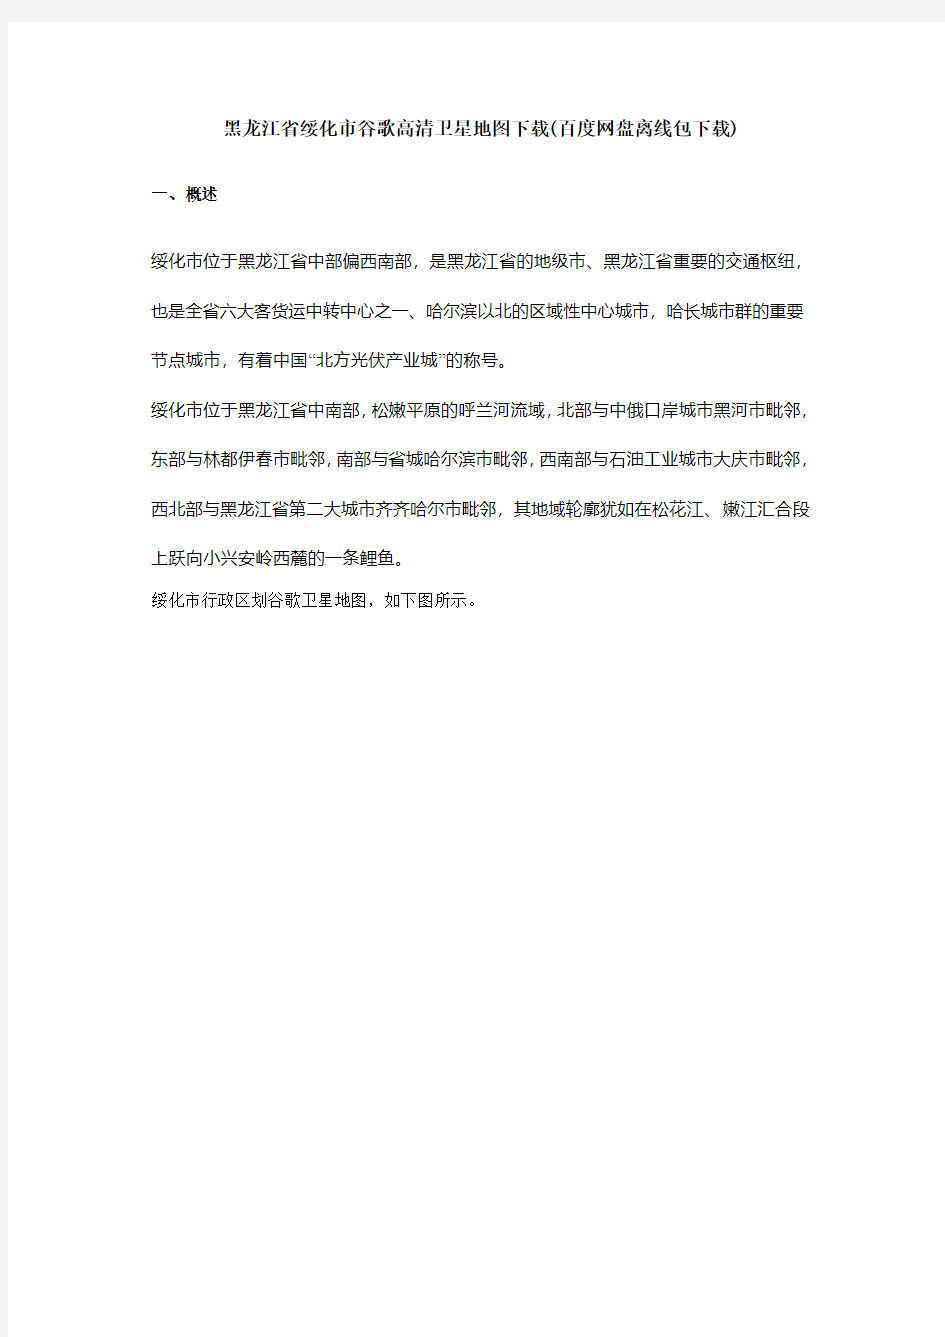 黑龙江省绥化市谷歌高清卫星地图下载(百度网盘下载)